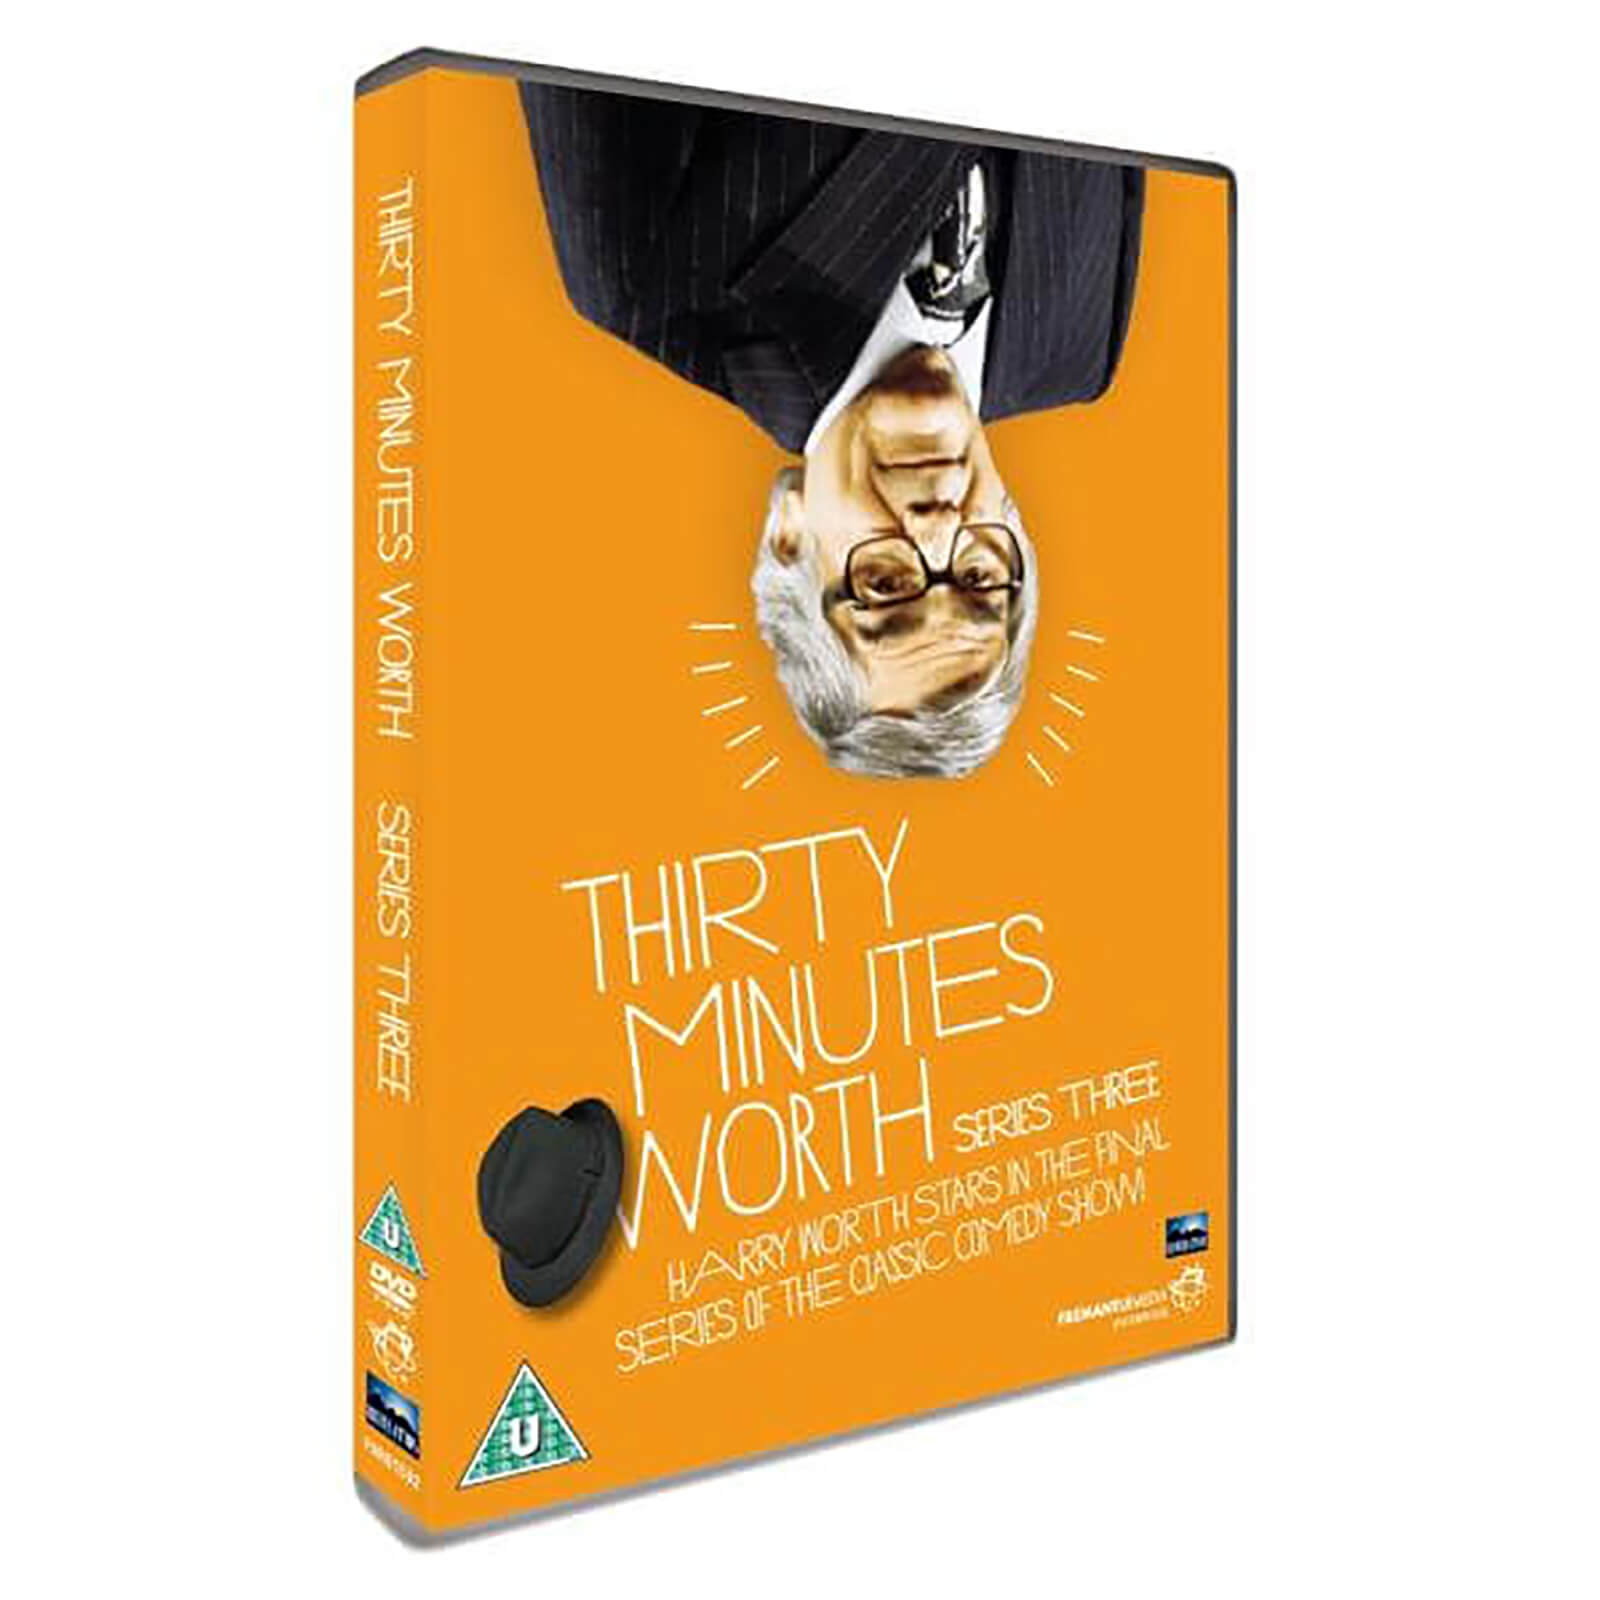 Thirty Minutes Worth – Series Three von Revelation Films